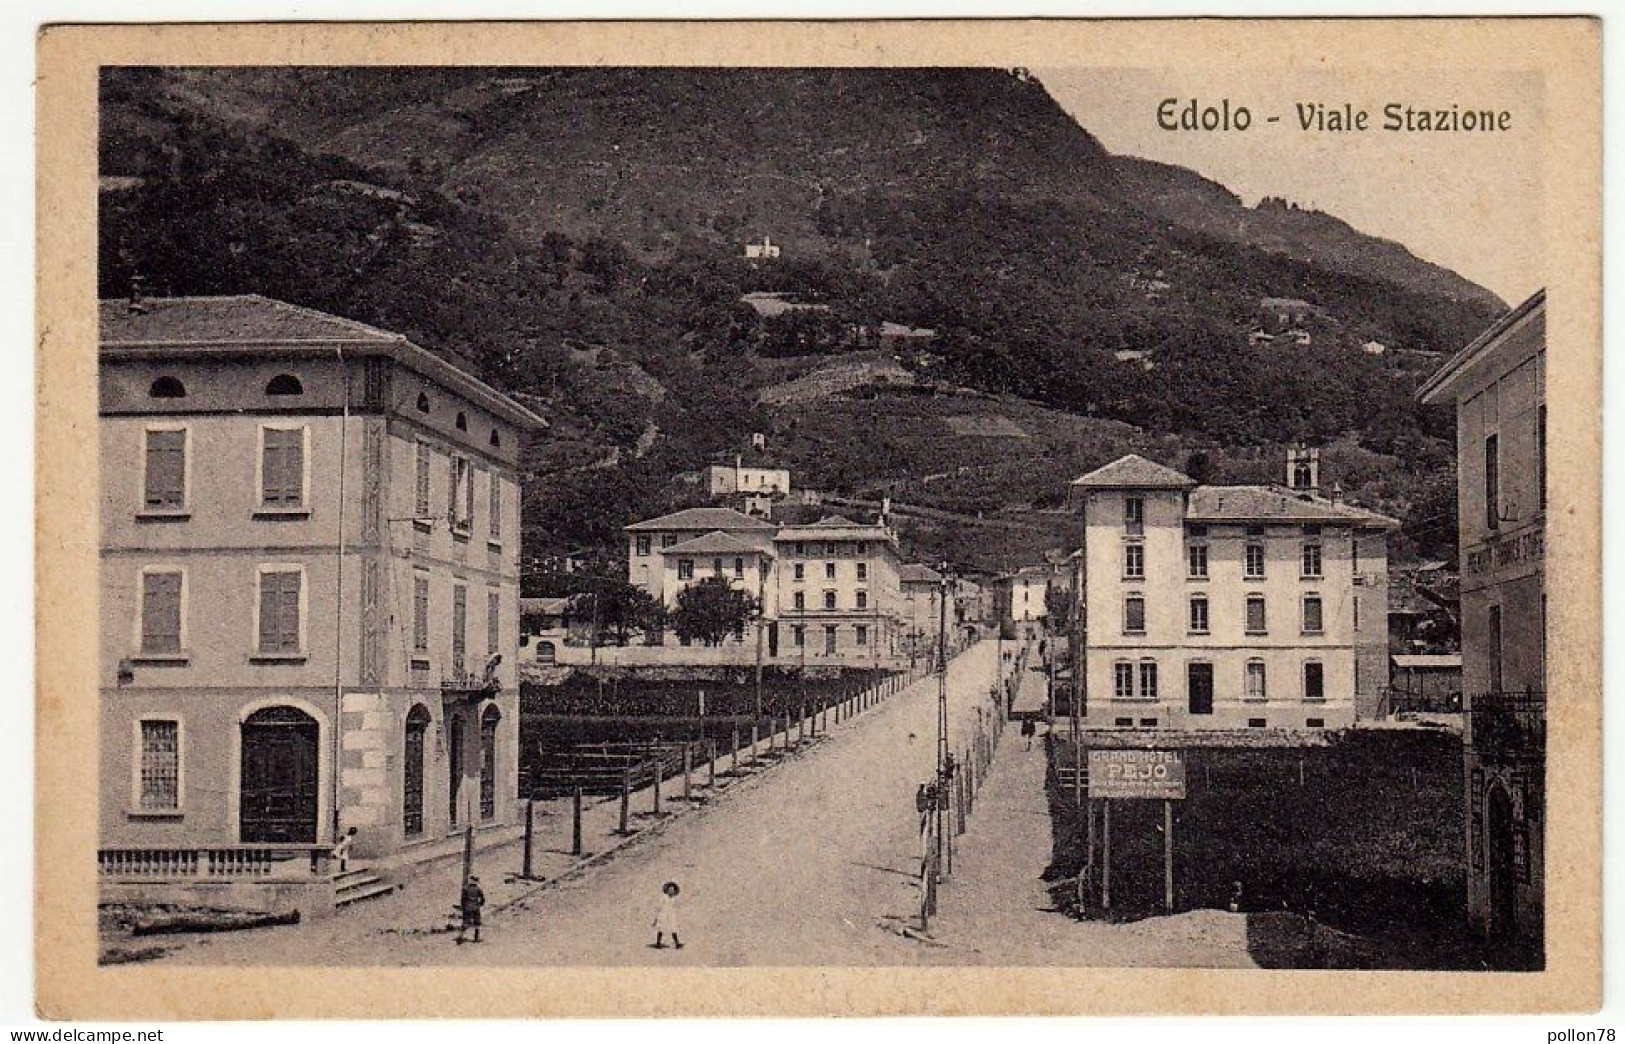 EDOLO - VIALE STAZIONE - BRESCIA - 1925 - Vedi Retro - Formato Piccolo - Brescia